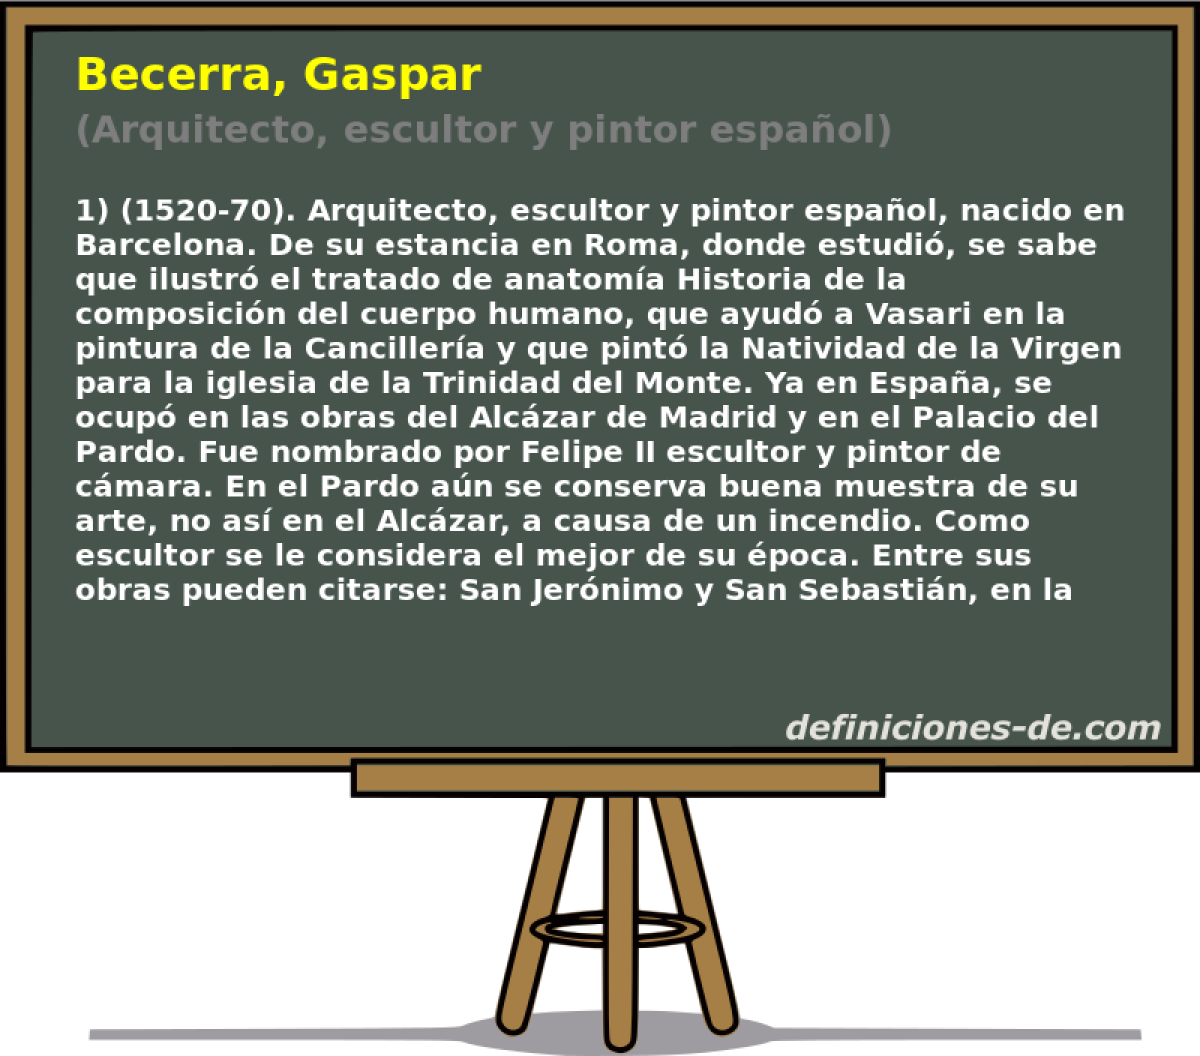 Becerra, Gaspar (Arquitecto, escultor y pintor espaol)